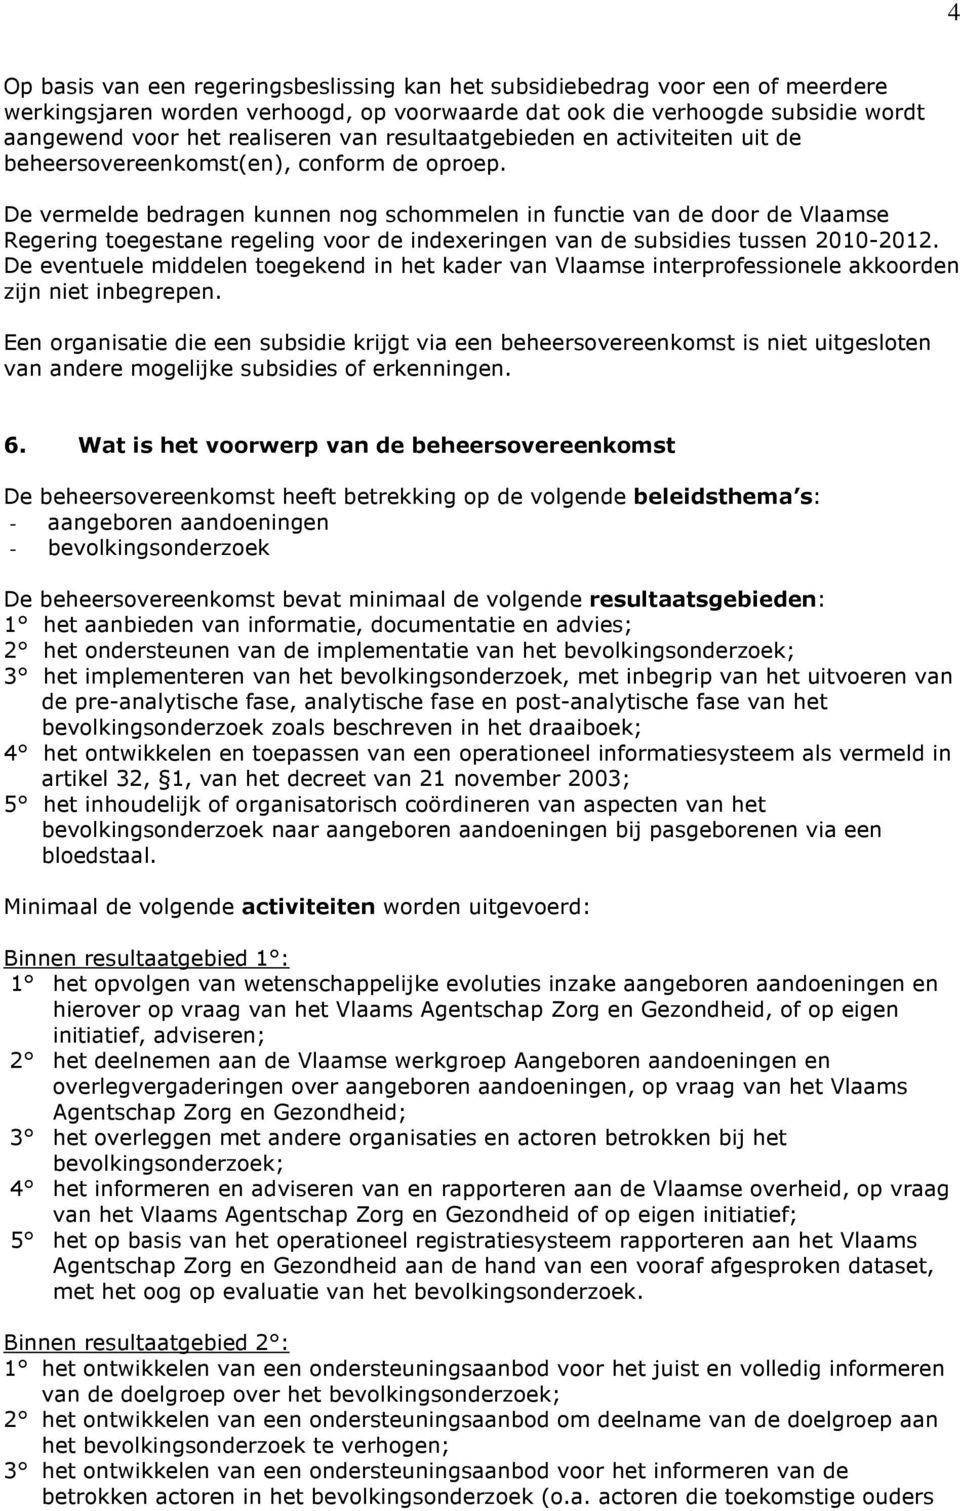 De vermelde bedragen kunnen nog schommelen in functie van de door de Vlaamse Regering toegestane regeling voor de indexeringen van de subsidies tussen 2010-2012.